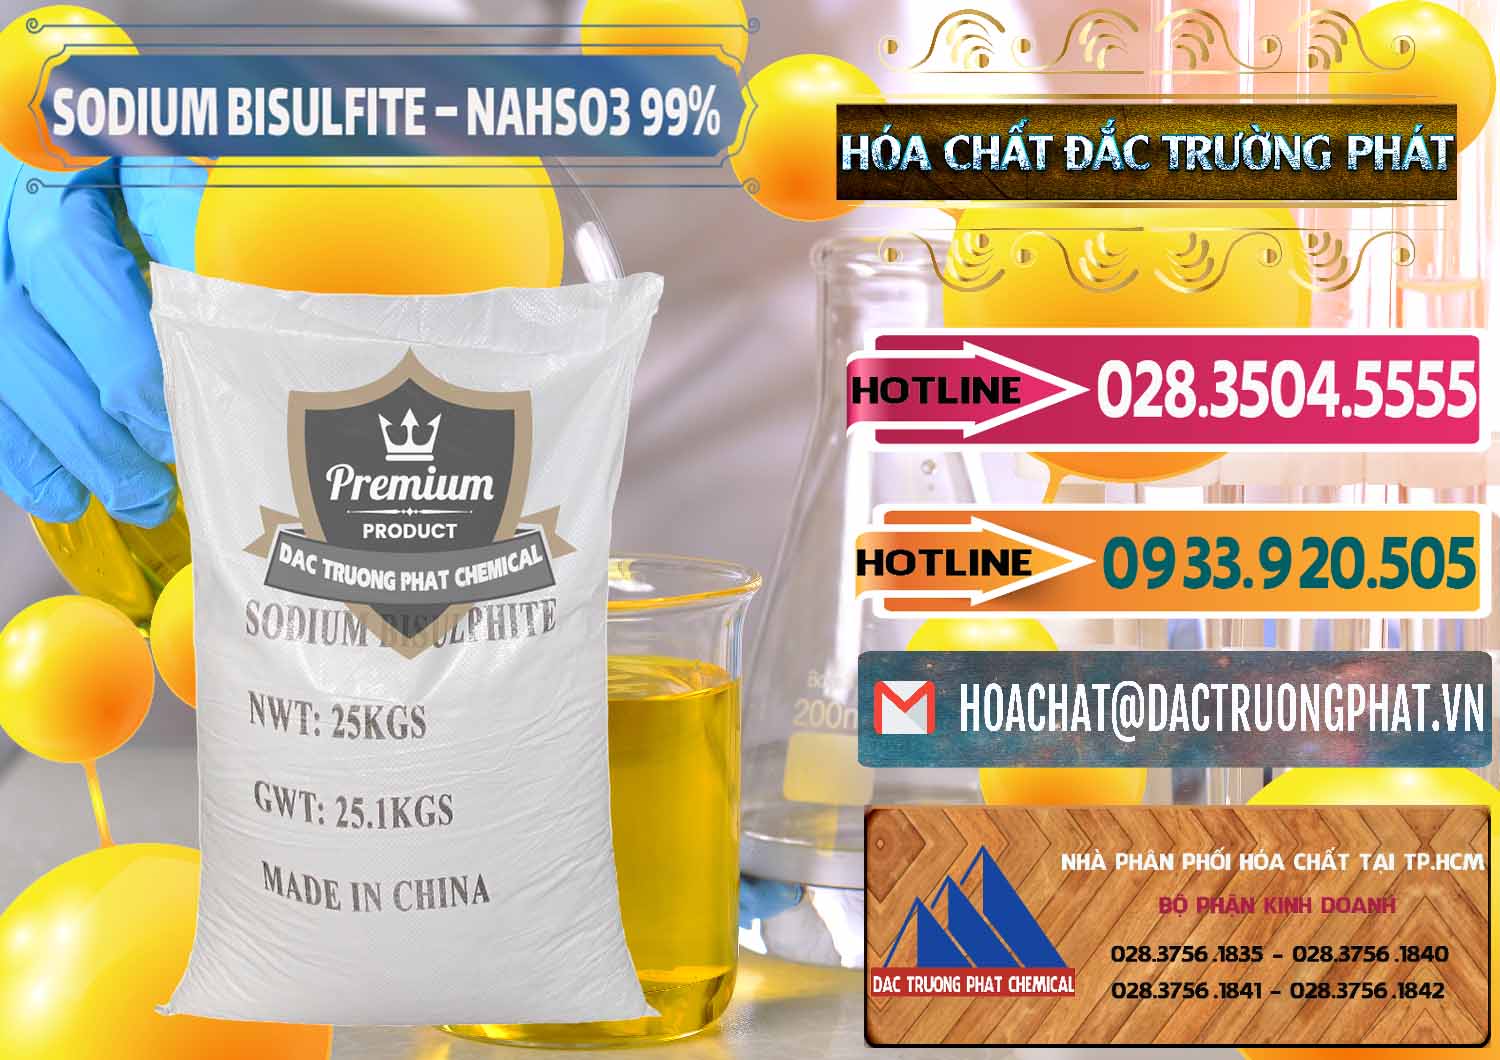 Nhập khẩu và bán Sodium Bisulfite – NAHSO3 Trung Quốc China - 0140 - Cty phân phối _ cung cấp hóa chất tại TP.HCM - dactruongphat.vn